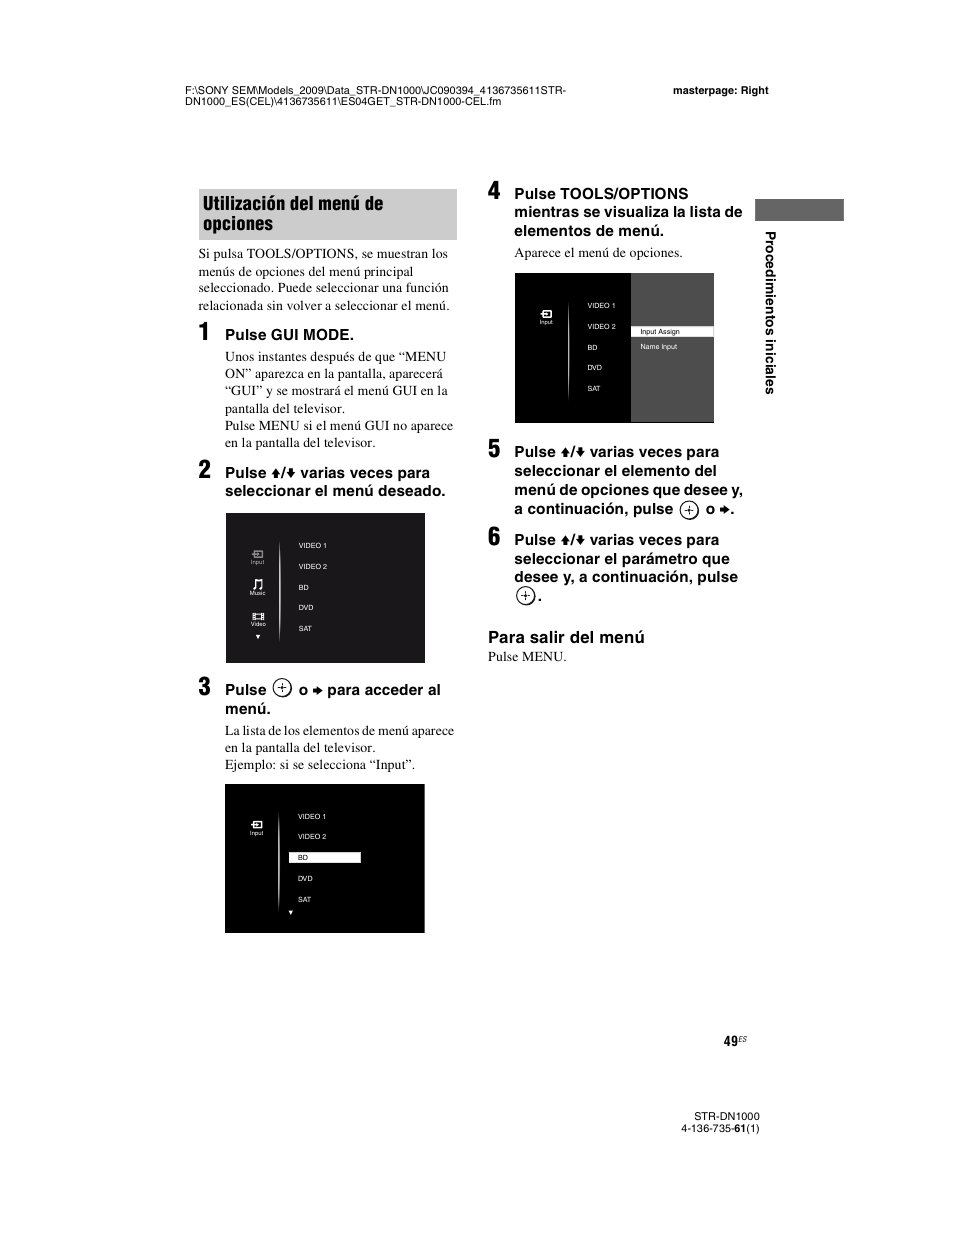 Utilización del menú de opciones, Para salir del menú | Sony STR-DN1000 Manual del usuario | Página 49 / 144